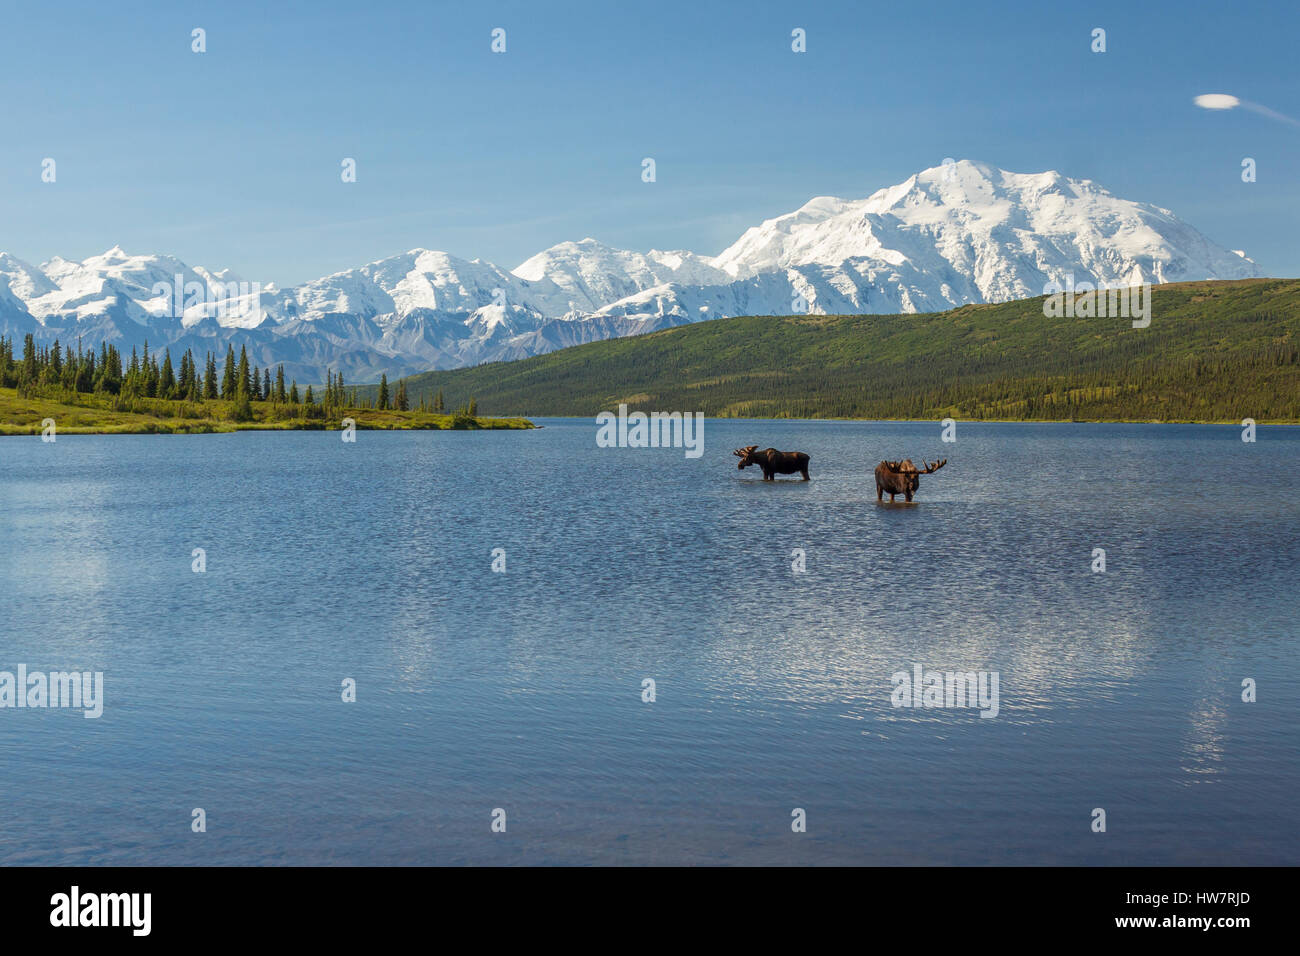 Deux Bull Moose Lake dans l'émerveillement d'alimentation avec la chaîne de l'Alaska dans l'arrière-plan, le parc national Denali, en Alaska. Banque D'Images